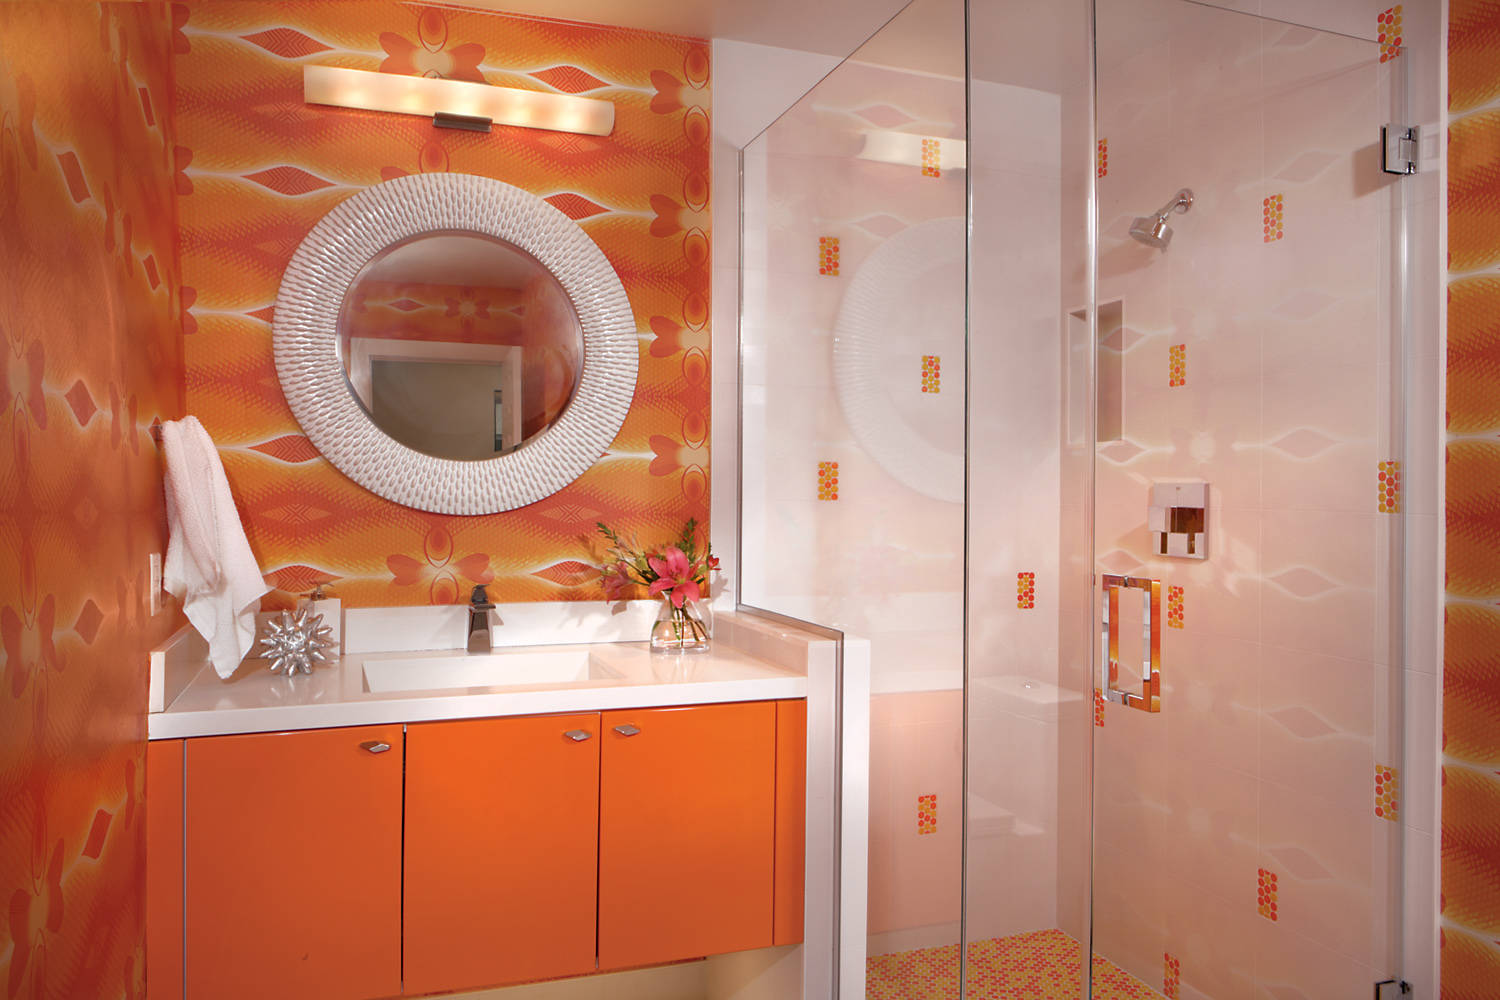 Attractive orange bathroom